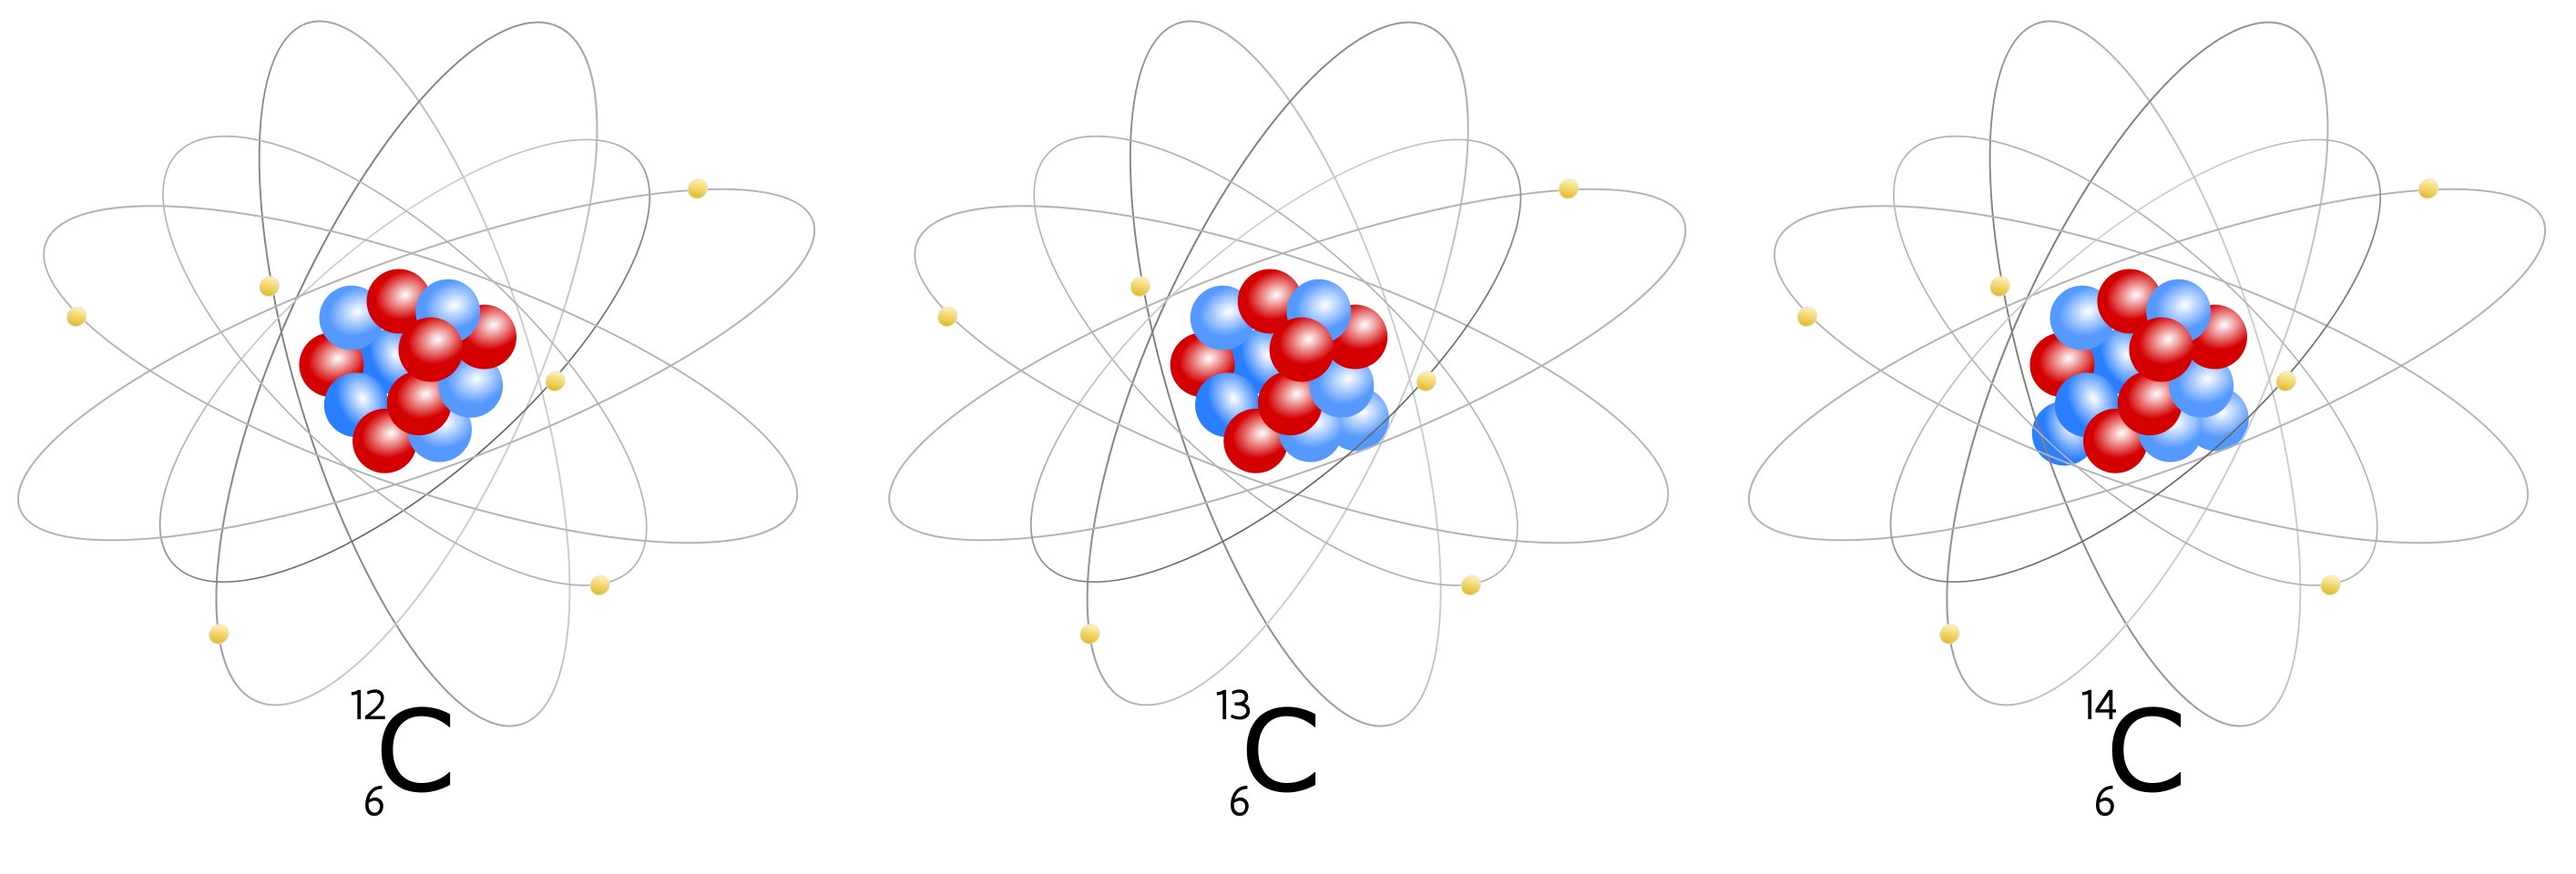 Atoommodel voor drie isotopen van het element koolstof. De isotopen ^13^C en ^14^C hebben respectievelijk één en twee neutronen (blauw) meer in hun atoomkern dan de meest courante koolstofisotoop ^12^C. Het aantal protonen (rood) blijft gelijk.